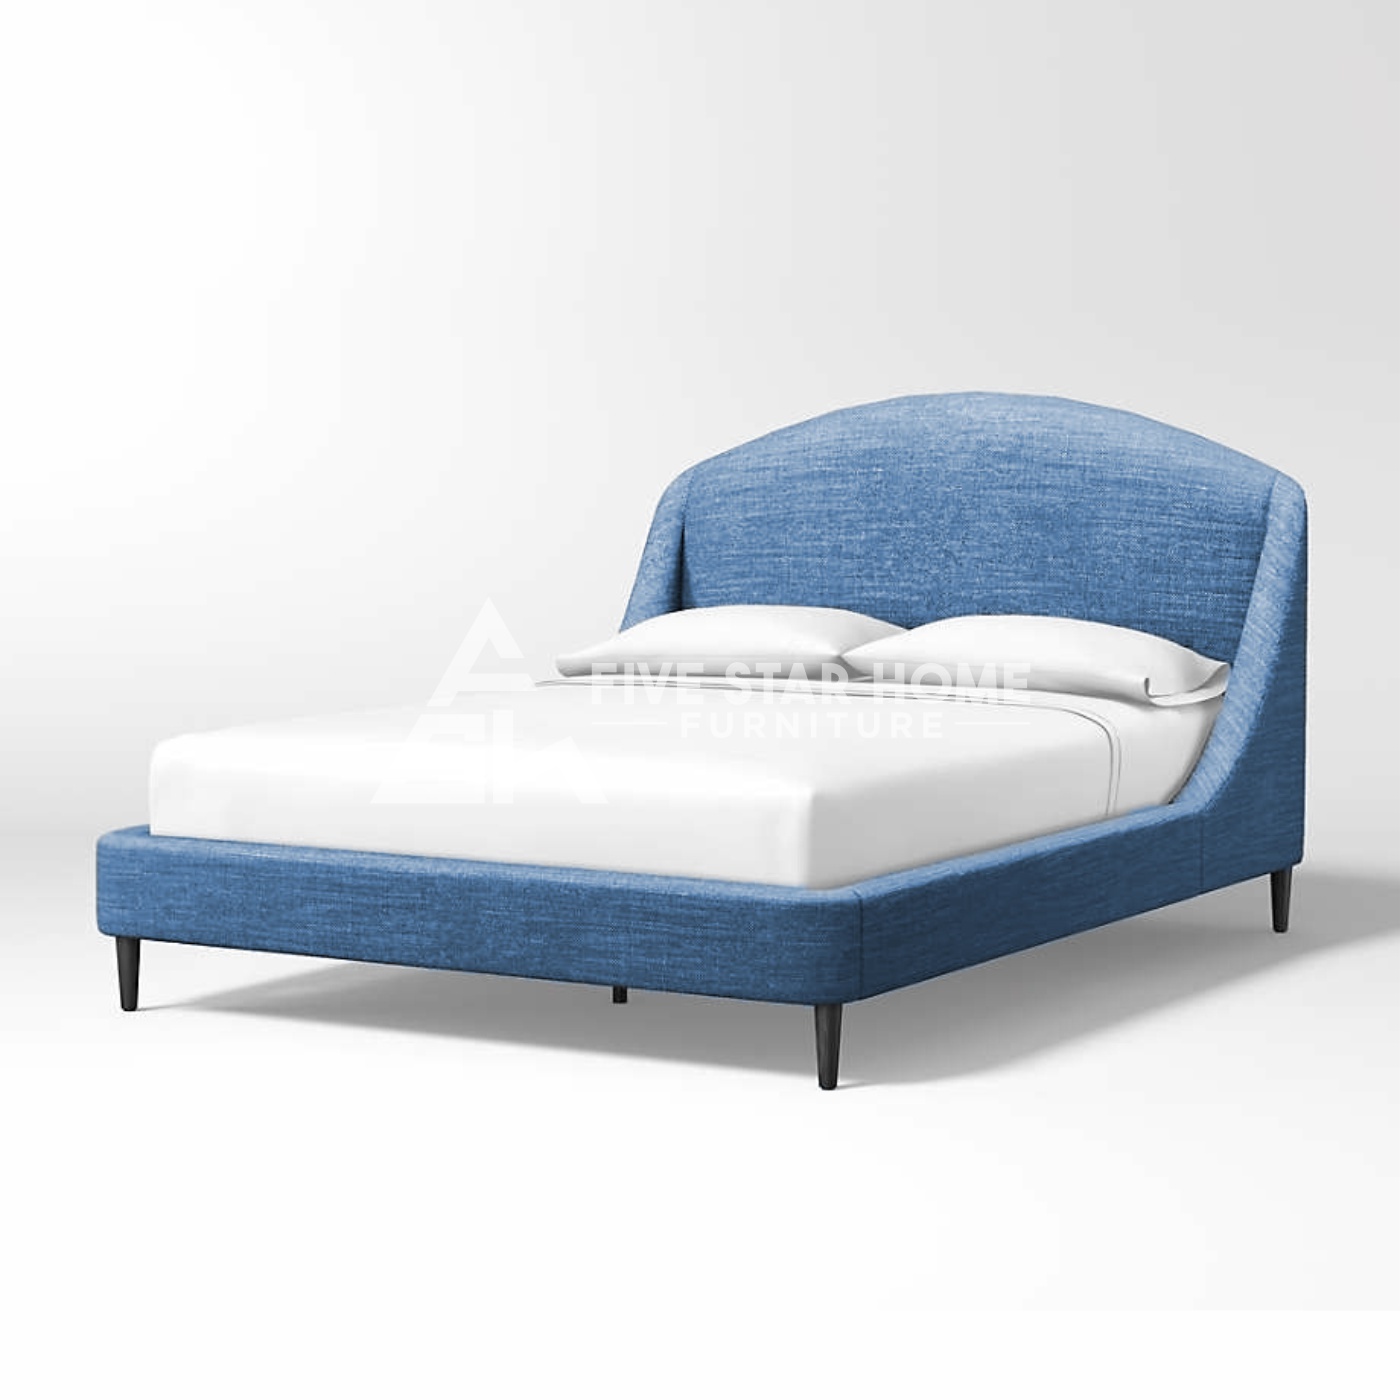 5 Star Mist Upholstered Bed In Light Blue